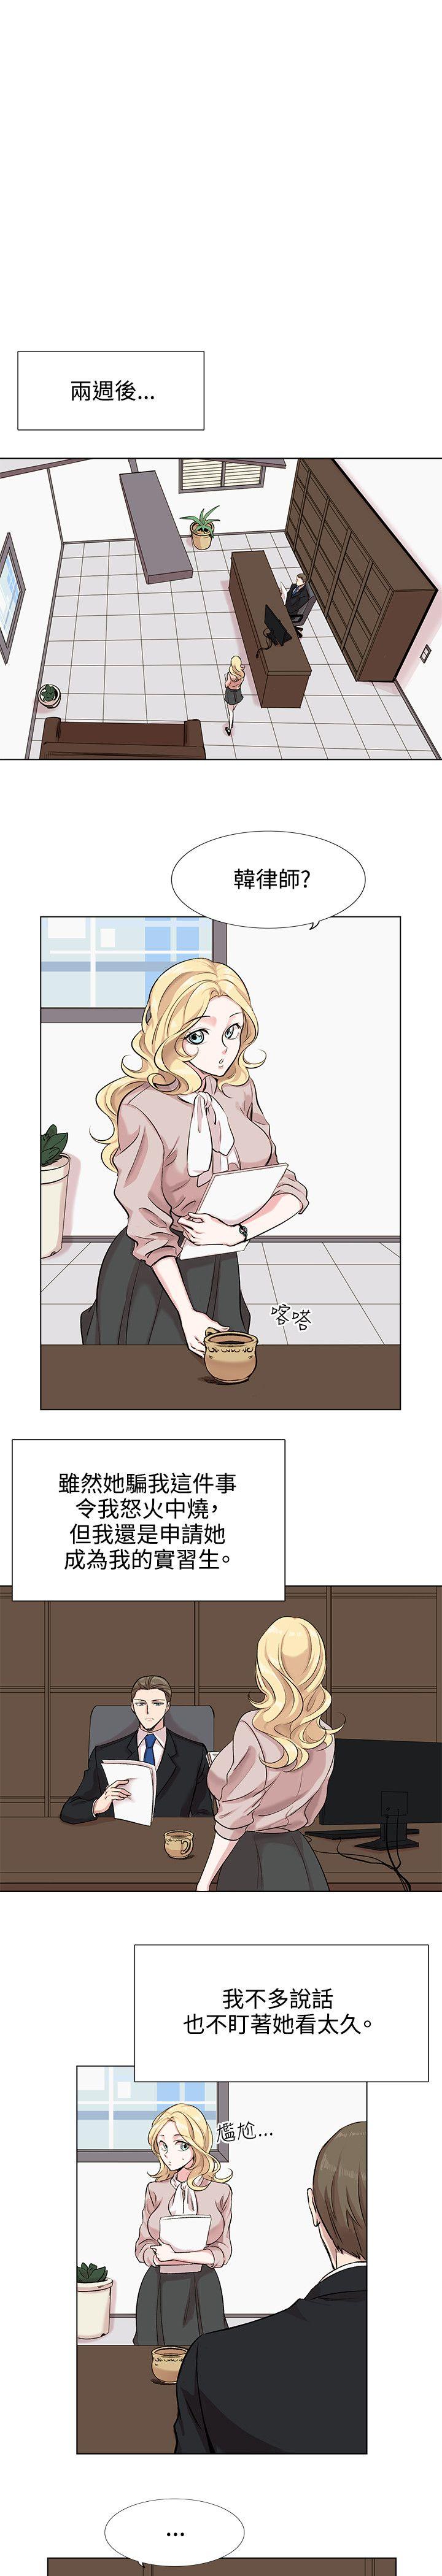 韩国污漫画 合理懷疑 第10话 31